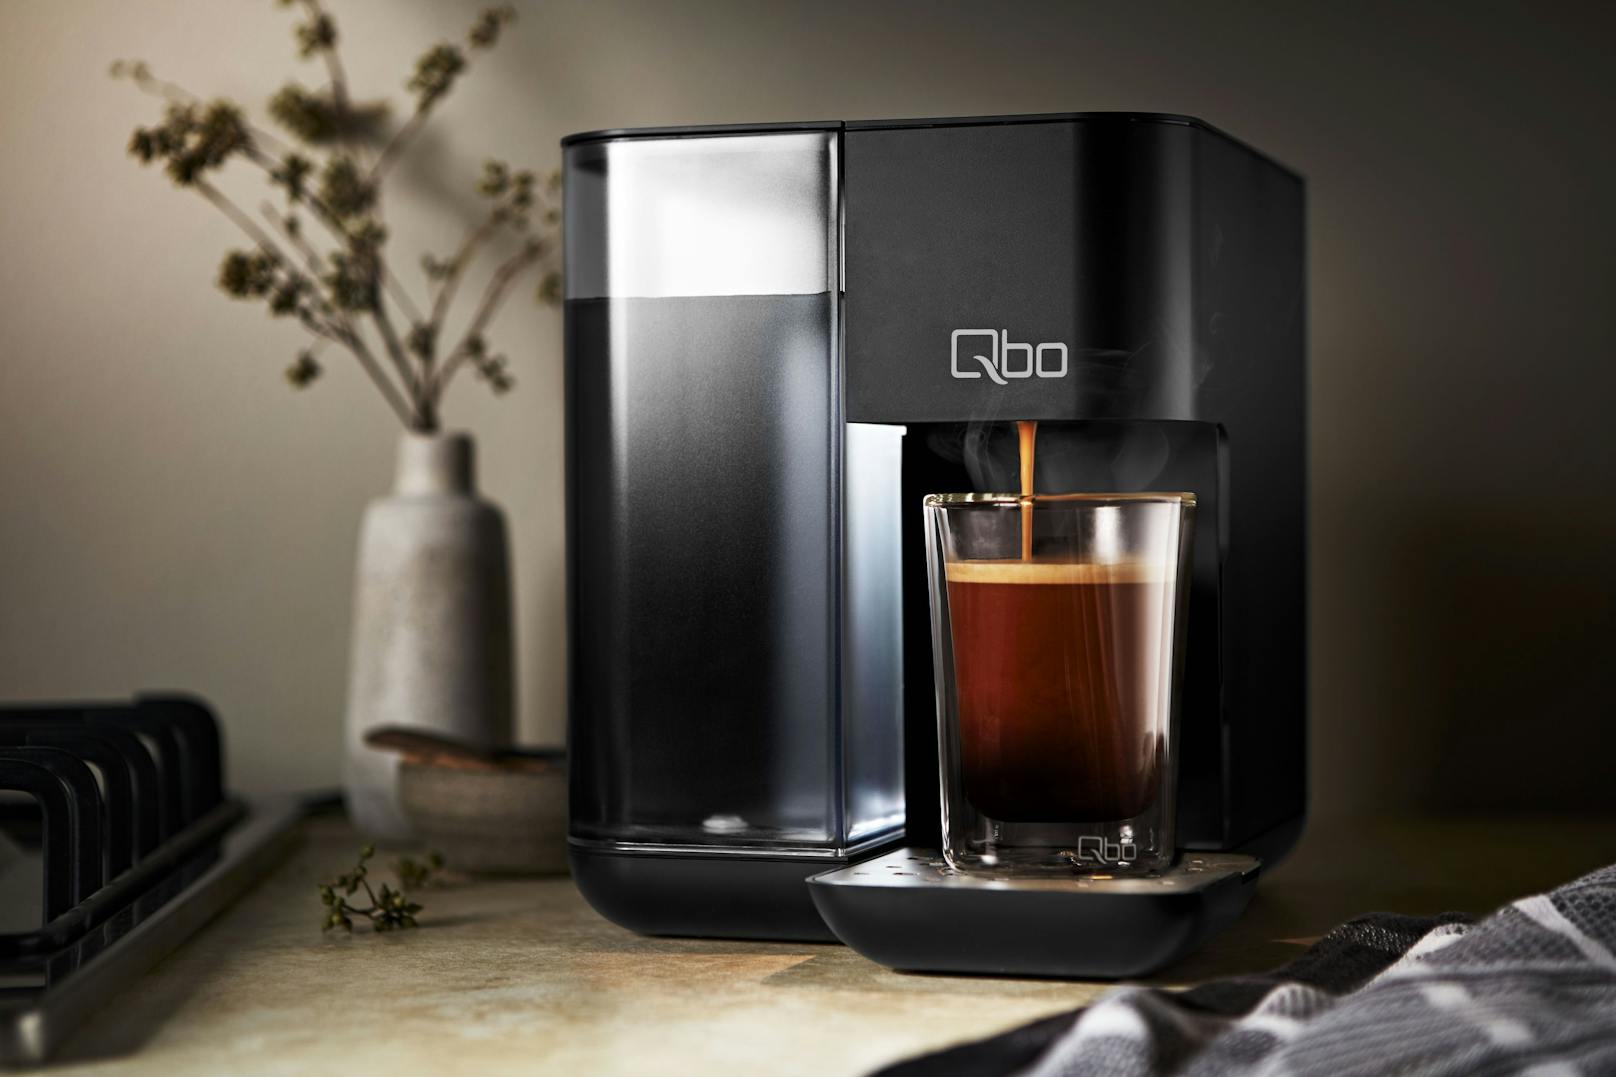 Viel Aroma und noch mehr Geschmack: Die Qbo Touch Kaffeemaschine sorgt für magische Genussmomente.